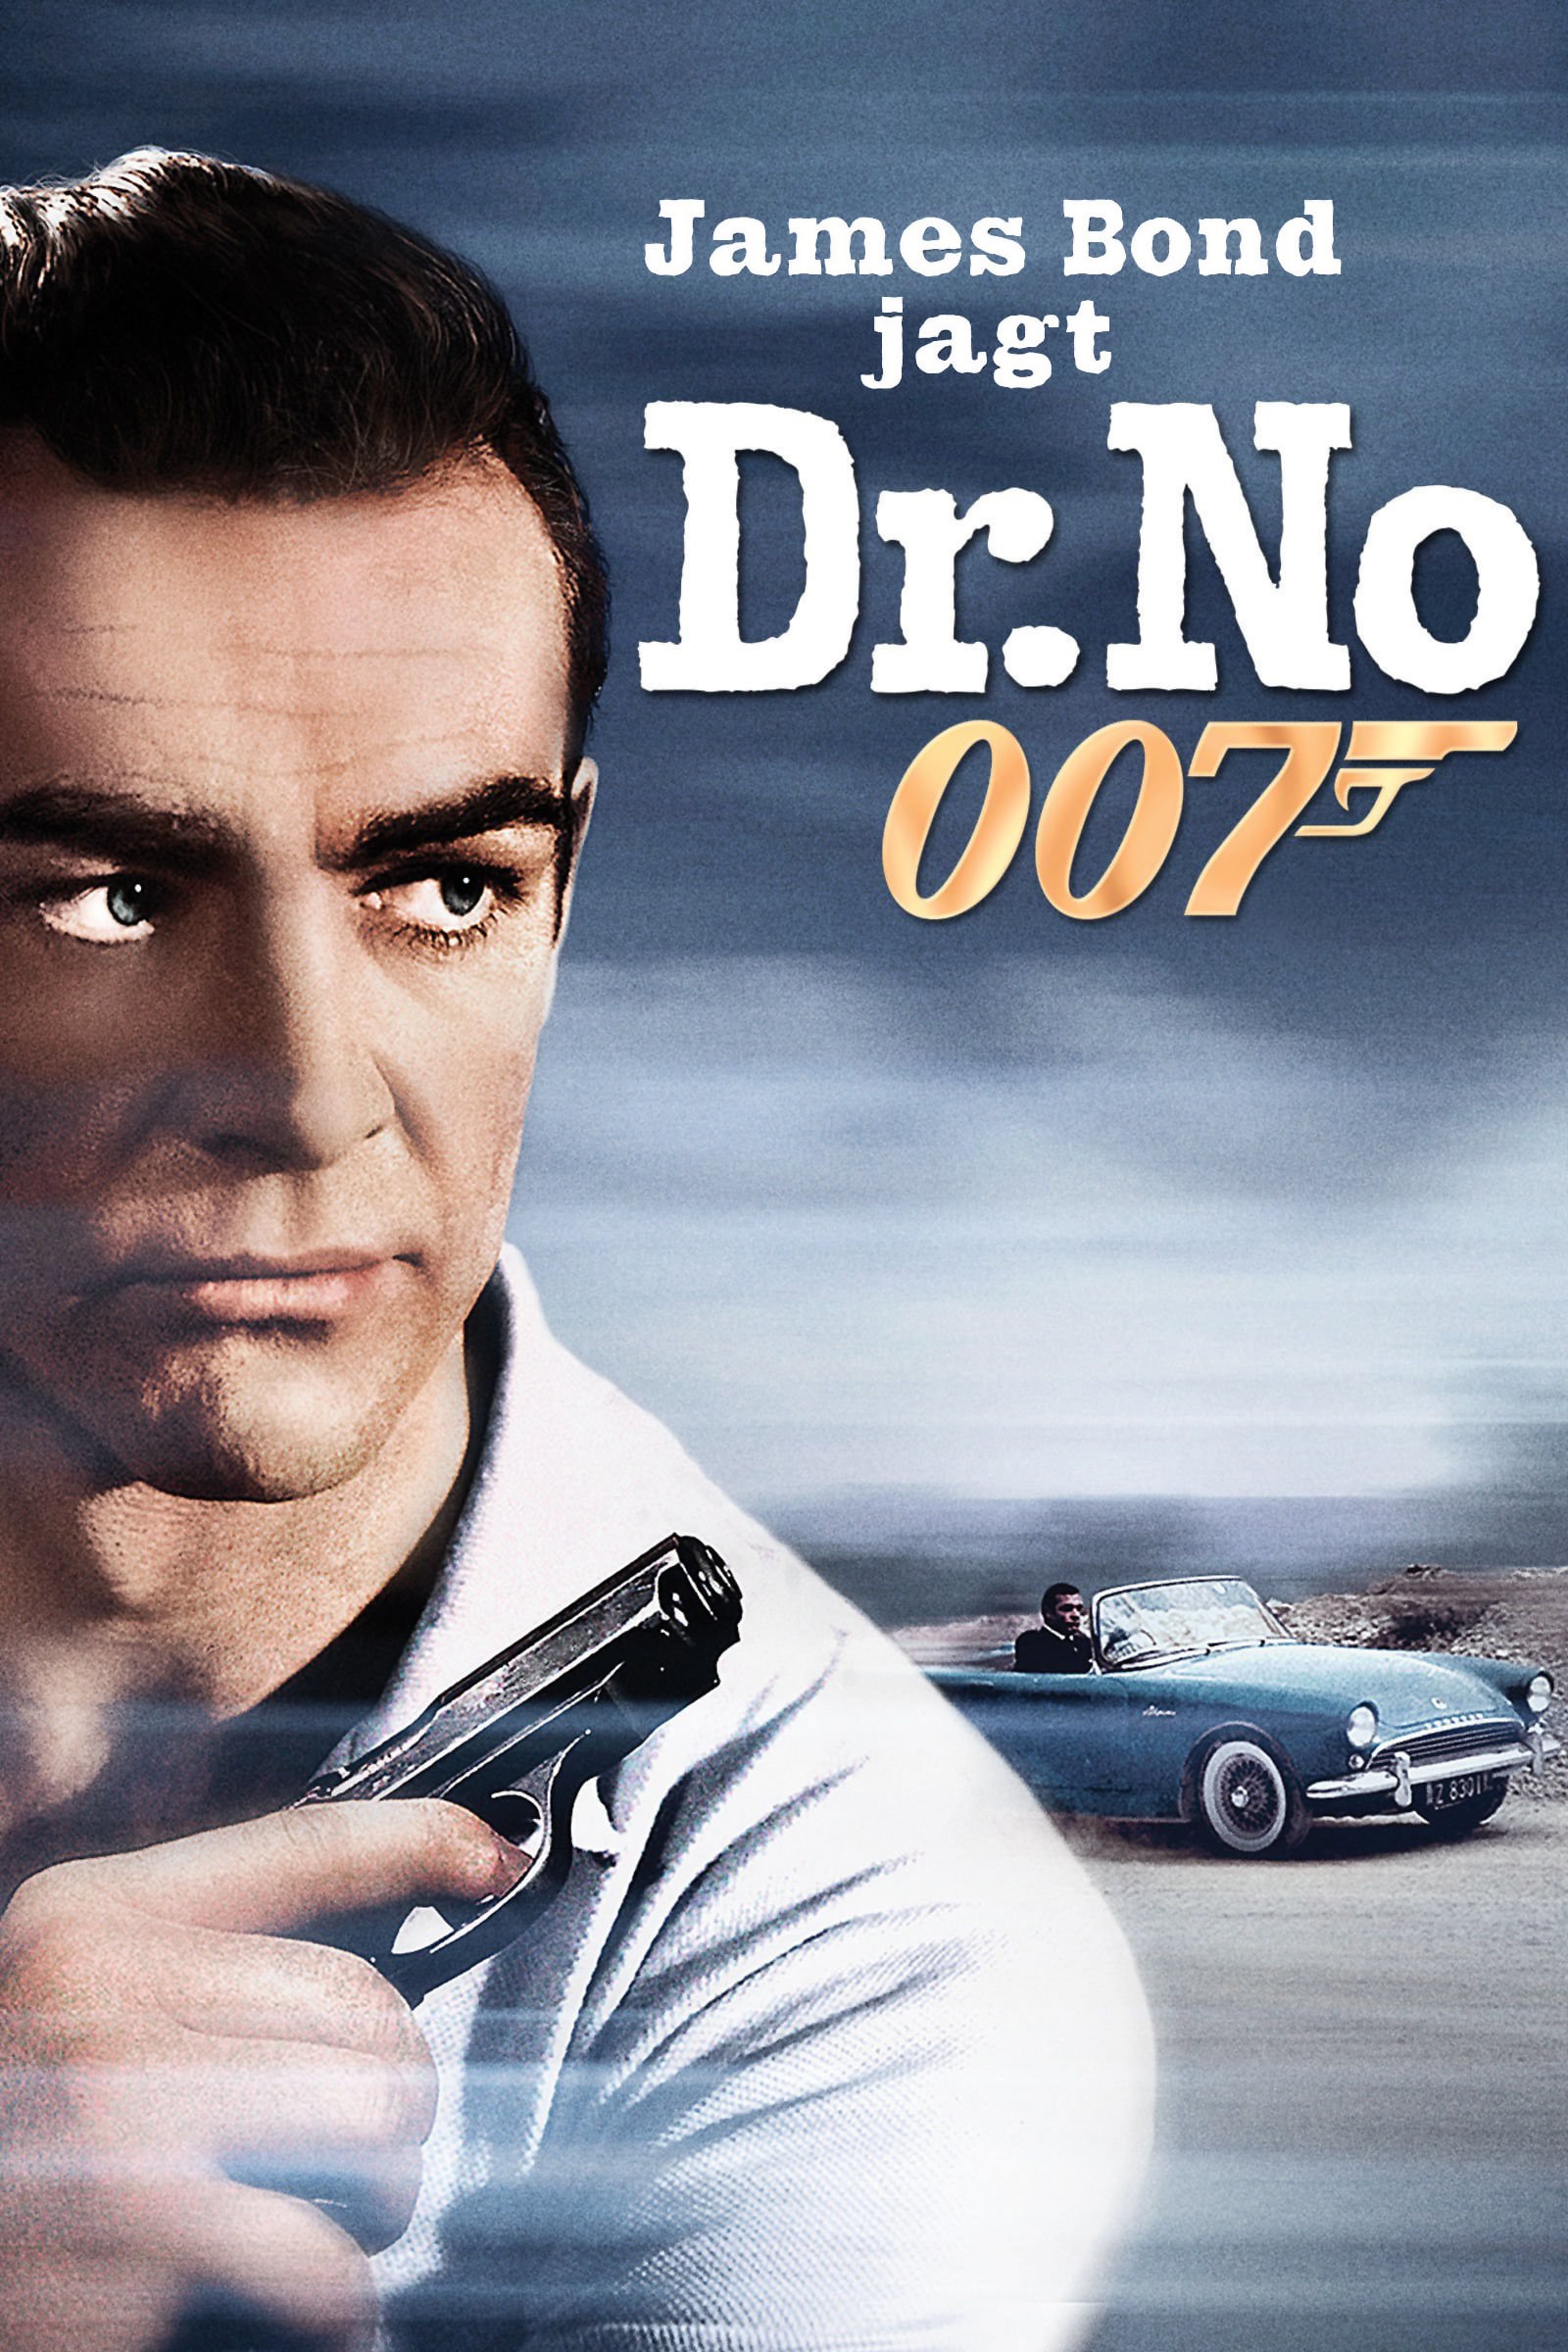 Plakat von "James Bond 007 jagt Dr. No"